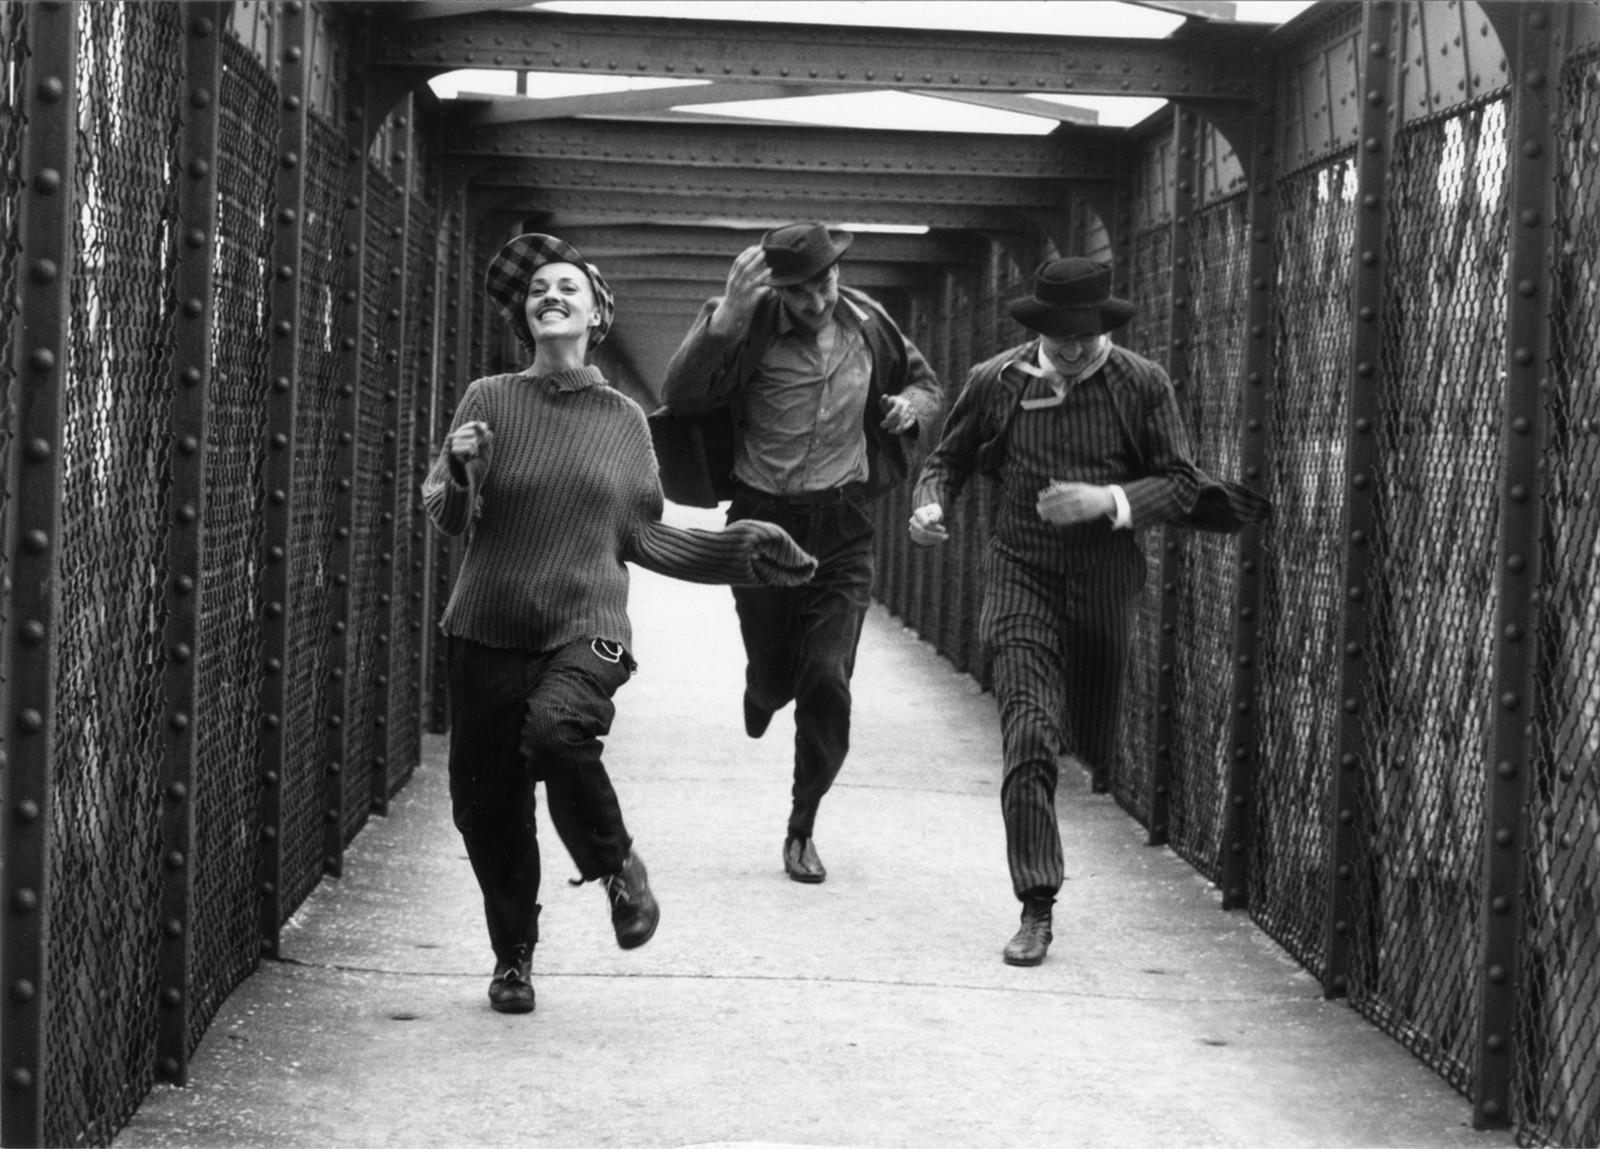 Jules et Jim, François Truffaut, 1961. Mercredi 26 avril 1961, 9 heures, Passerelle de Valmy, Charenton-le-Pont.